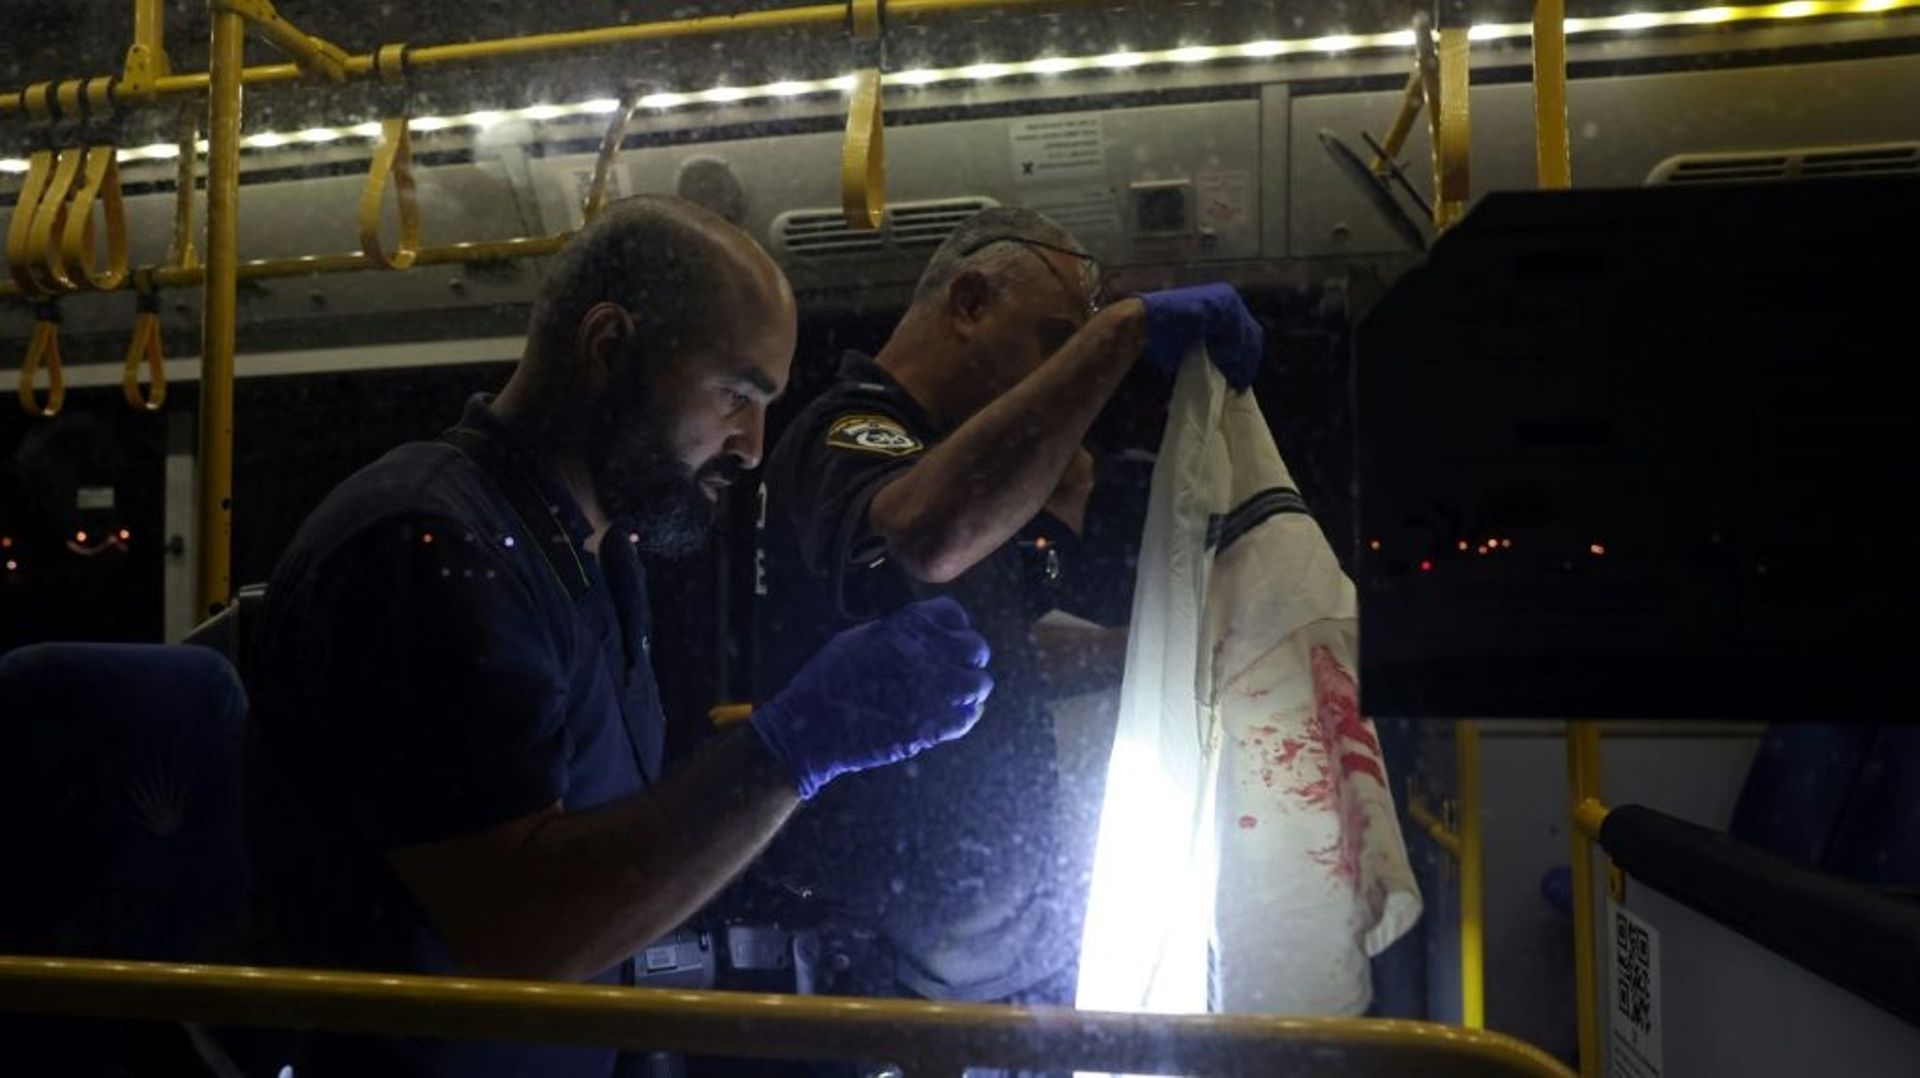 Sept personnes ont été blessées, dont deux grièvement, dans une attaque armée contre un bus tôt dimanche dans le centre de Jérusalem, ont indiqué la police israélienne et les secouristes